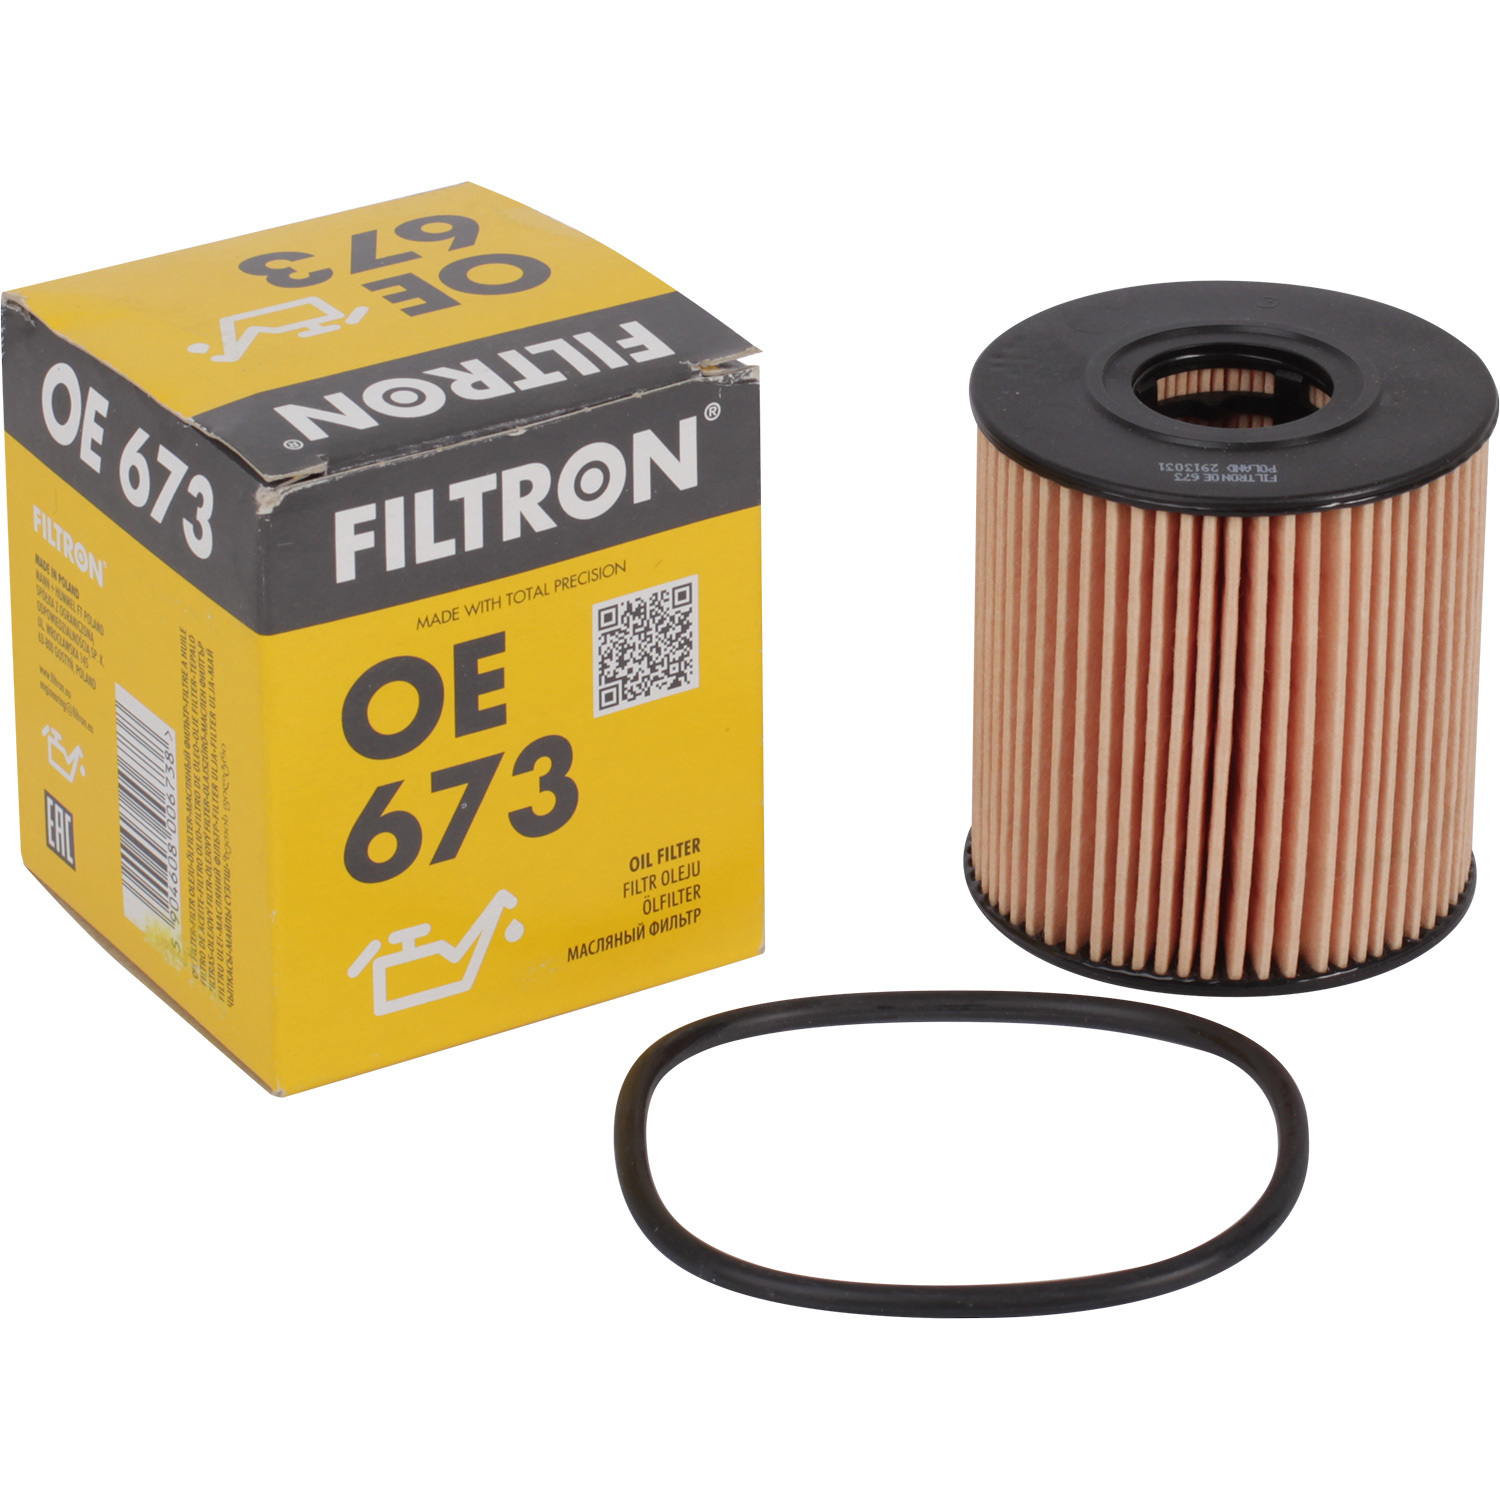 Фильтры Filtron Фильтр масляный Filtron OE673